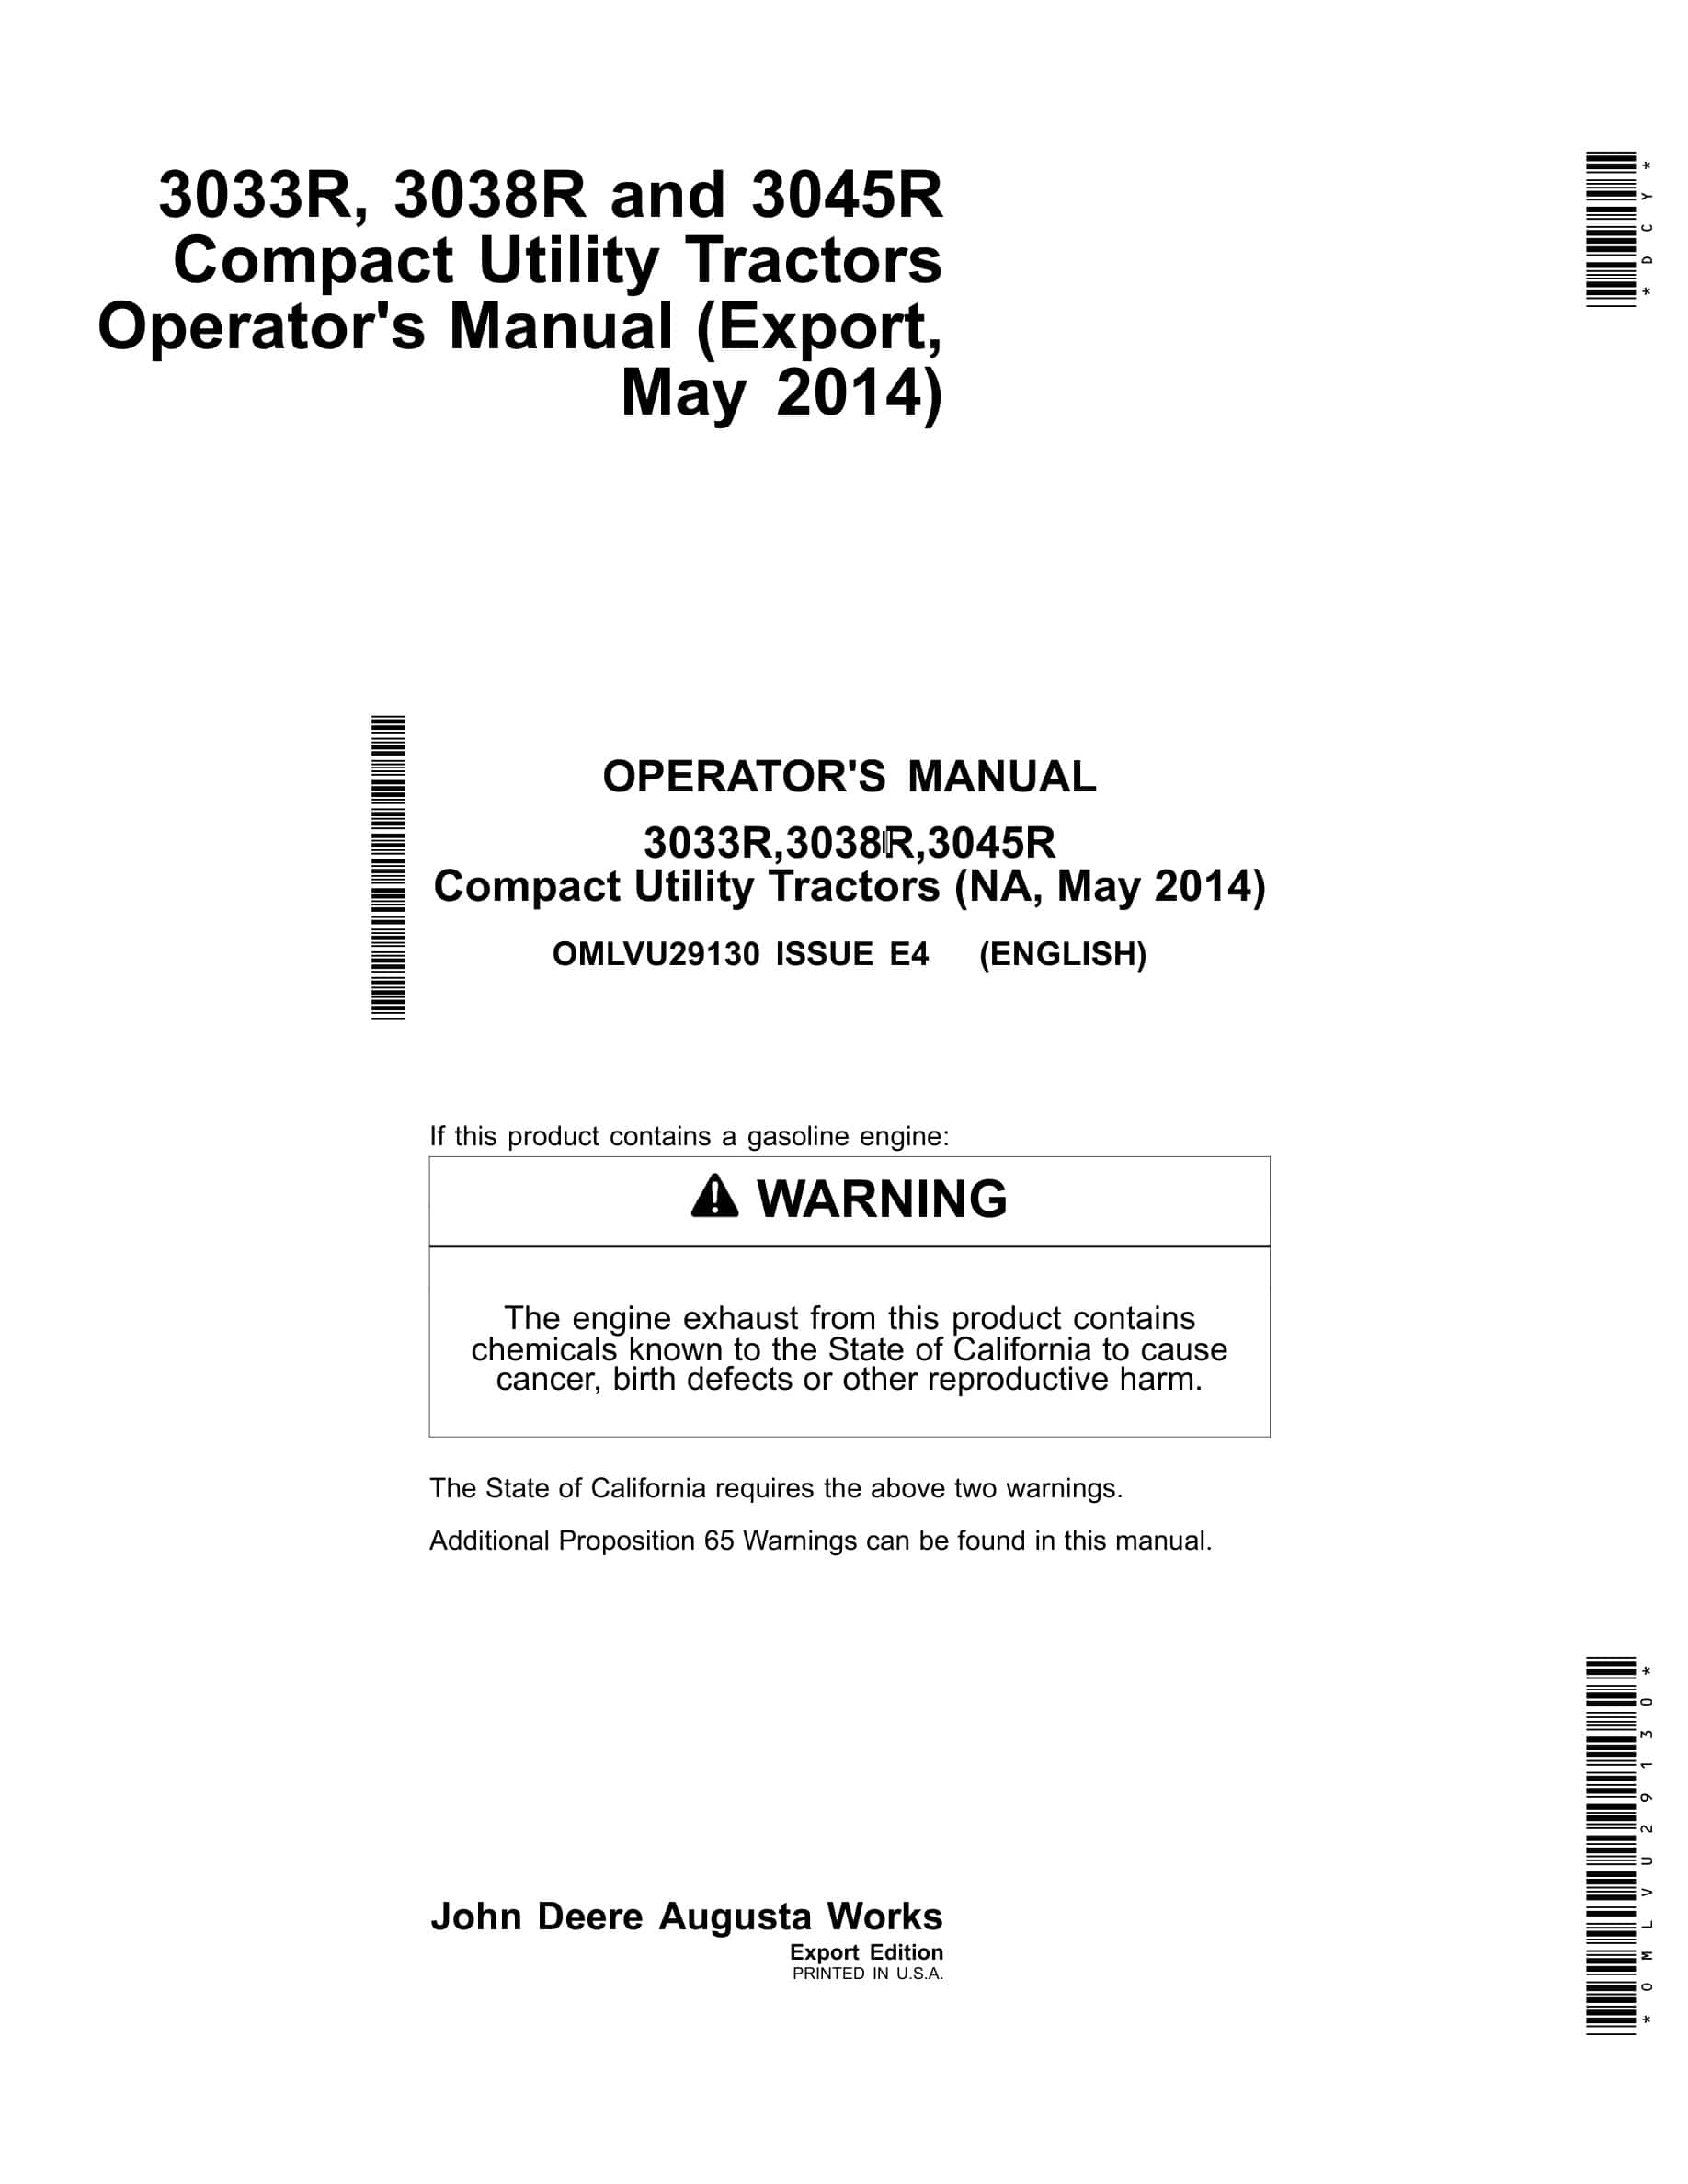 John Deere 3033r,3038r,3045r Compact Utility Tractors Operator Manuals OMLVU29130-1